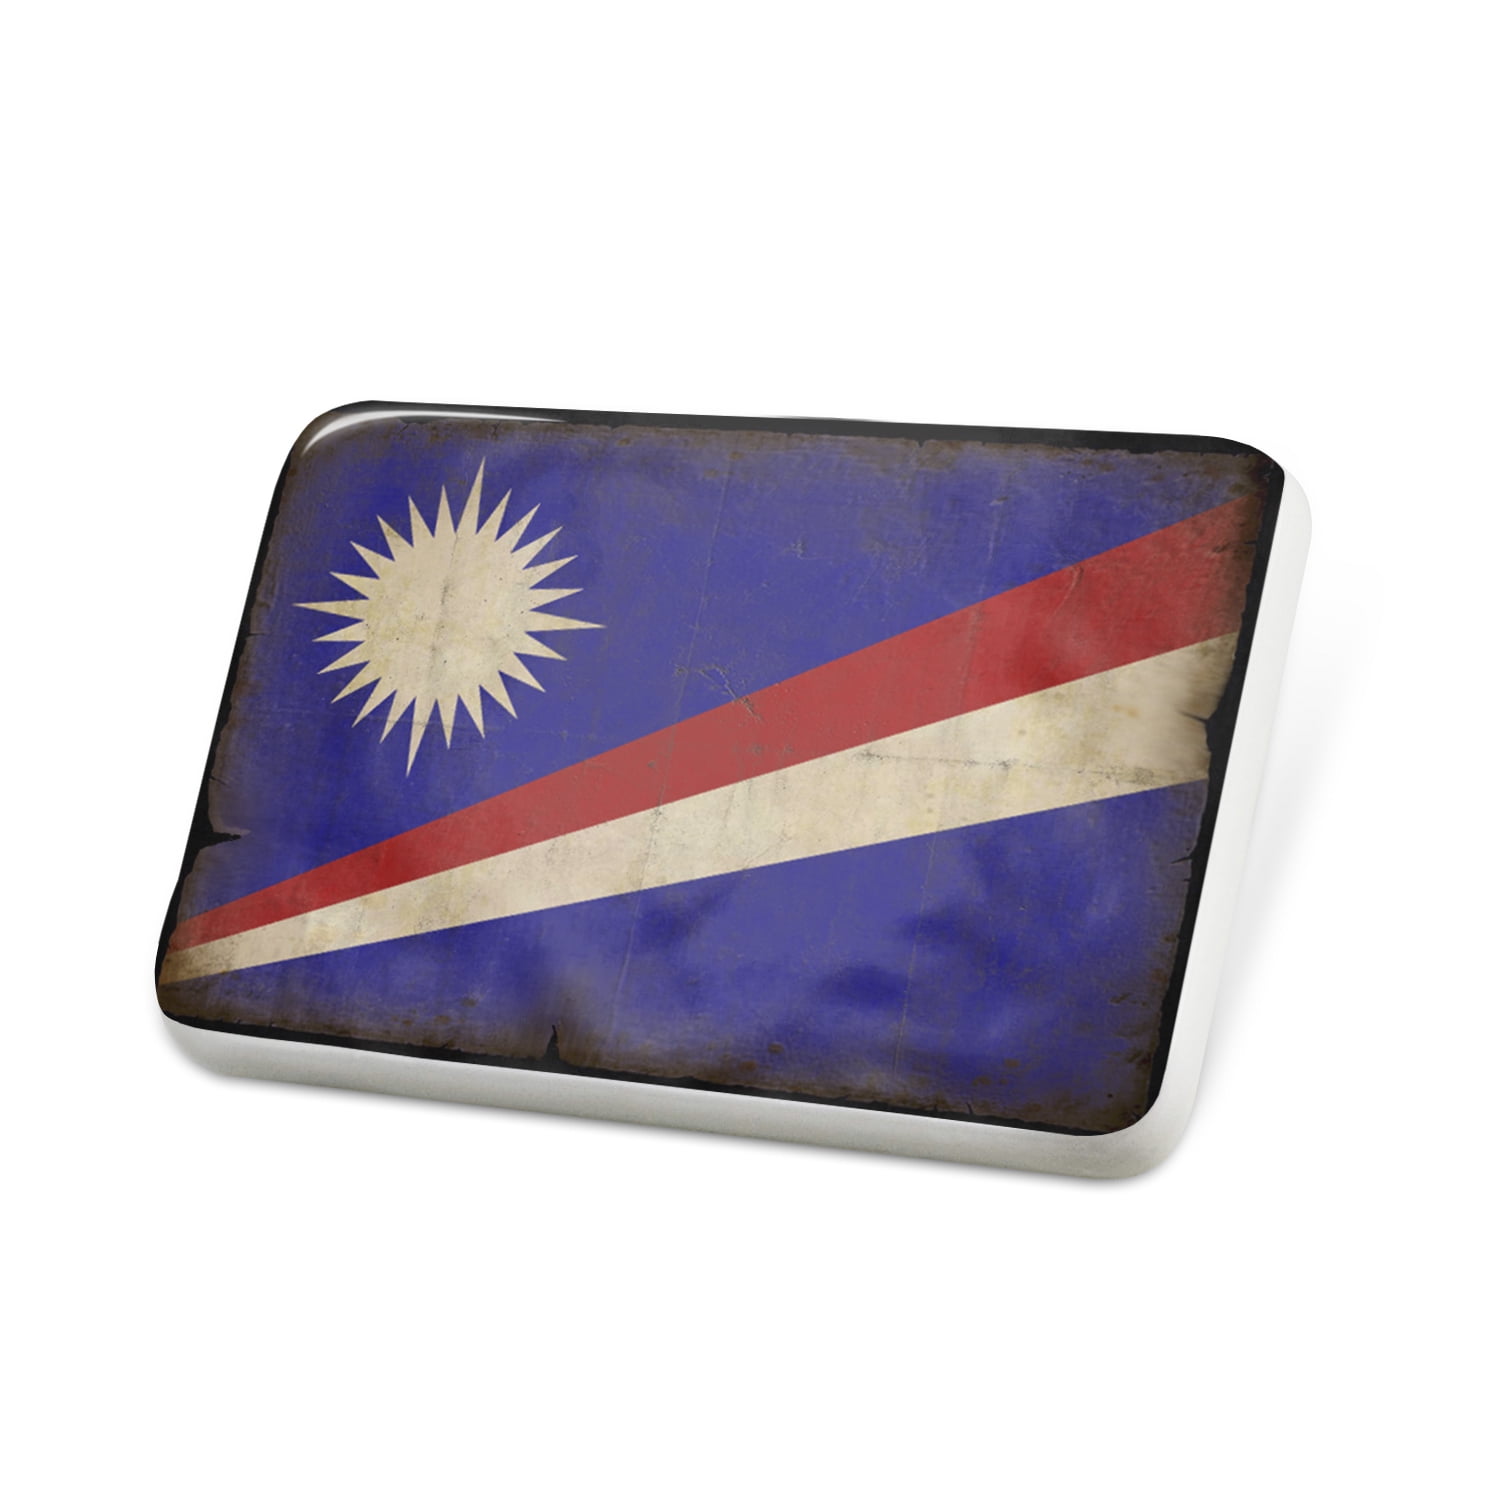 Marshallinseln  Flaggenpin,Flagge,Flag,Pin,Nadel,Badge 